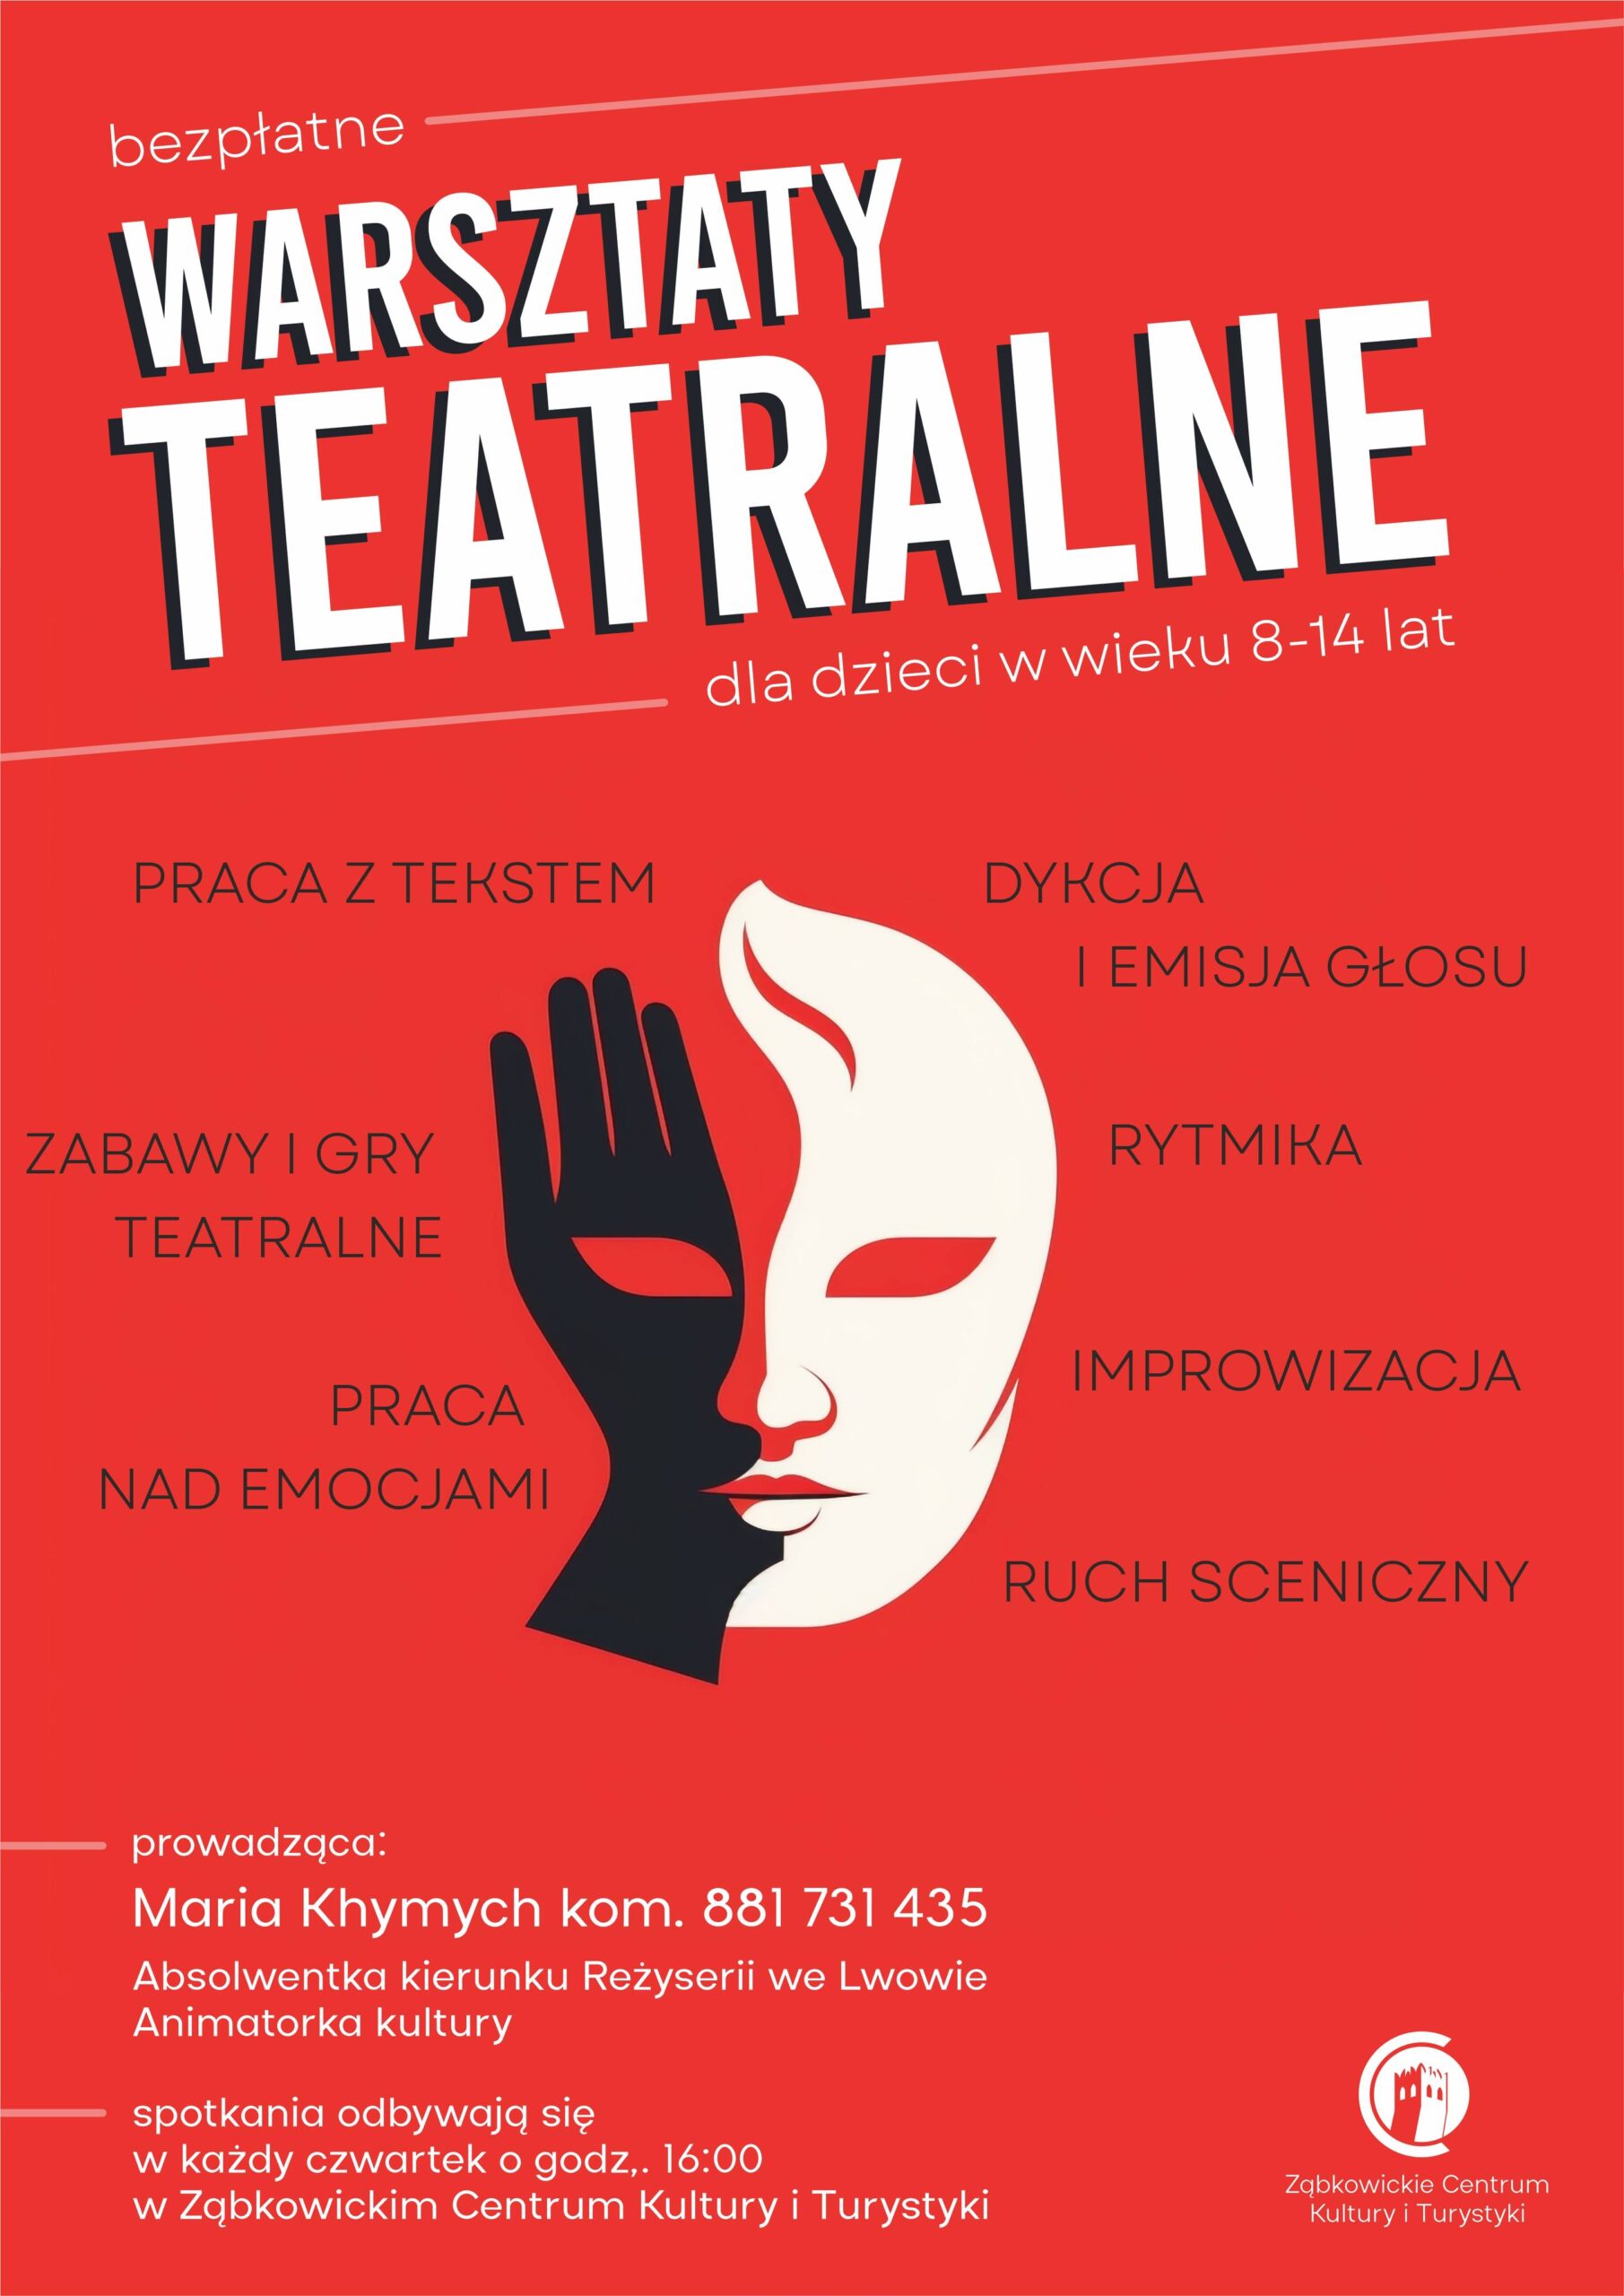 Plakat o warsztatach teatralnych dla dzieci prowadzonych przez Marię Khymych w czwartki o godzinie 16:00 w Ząbkowickim Centrum Kultury i Turystyki. Na plakacie znajduje się biało-czarna teatralna maska, na czerwonym tle.